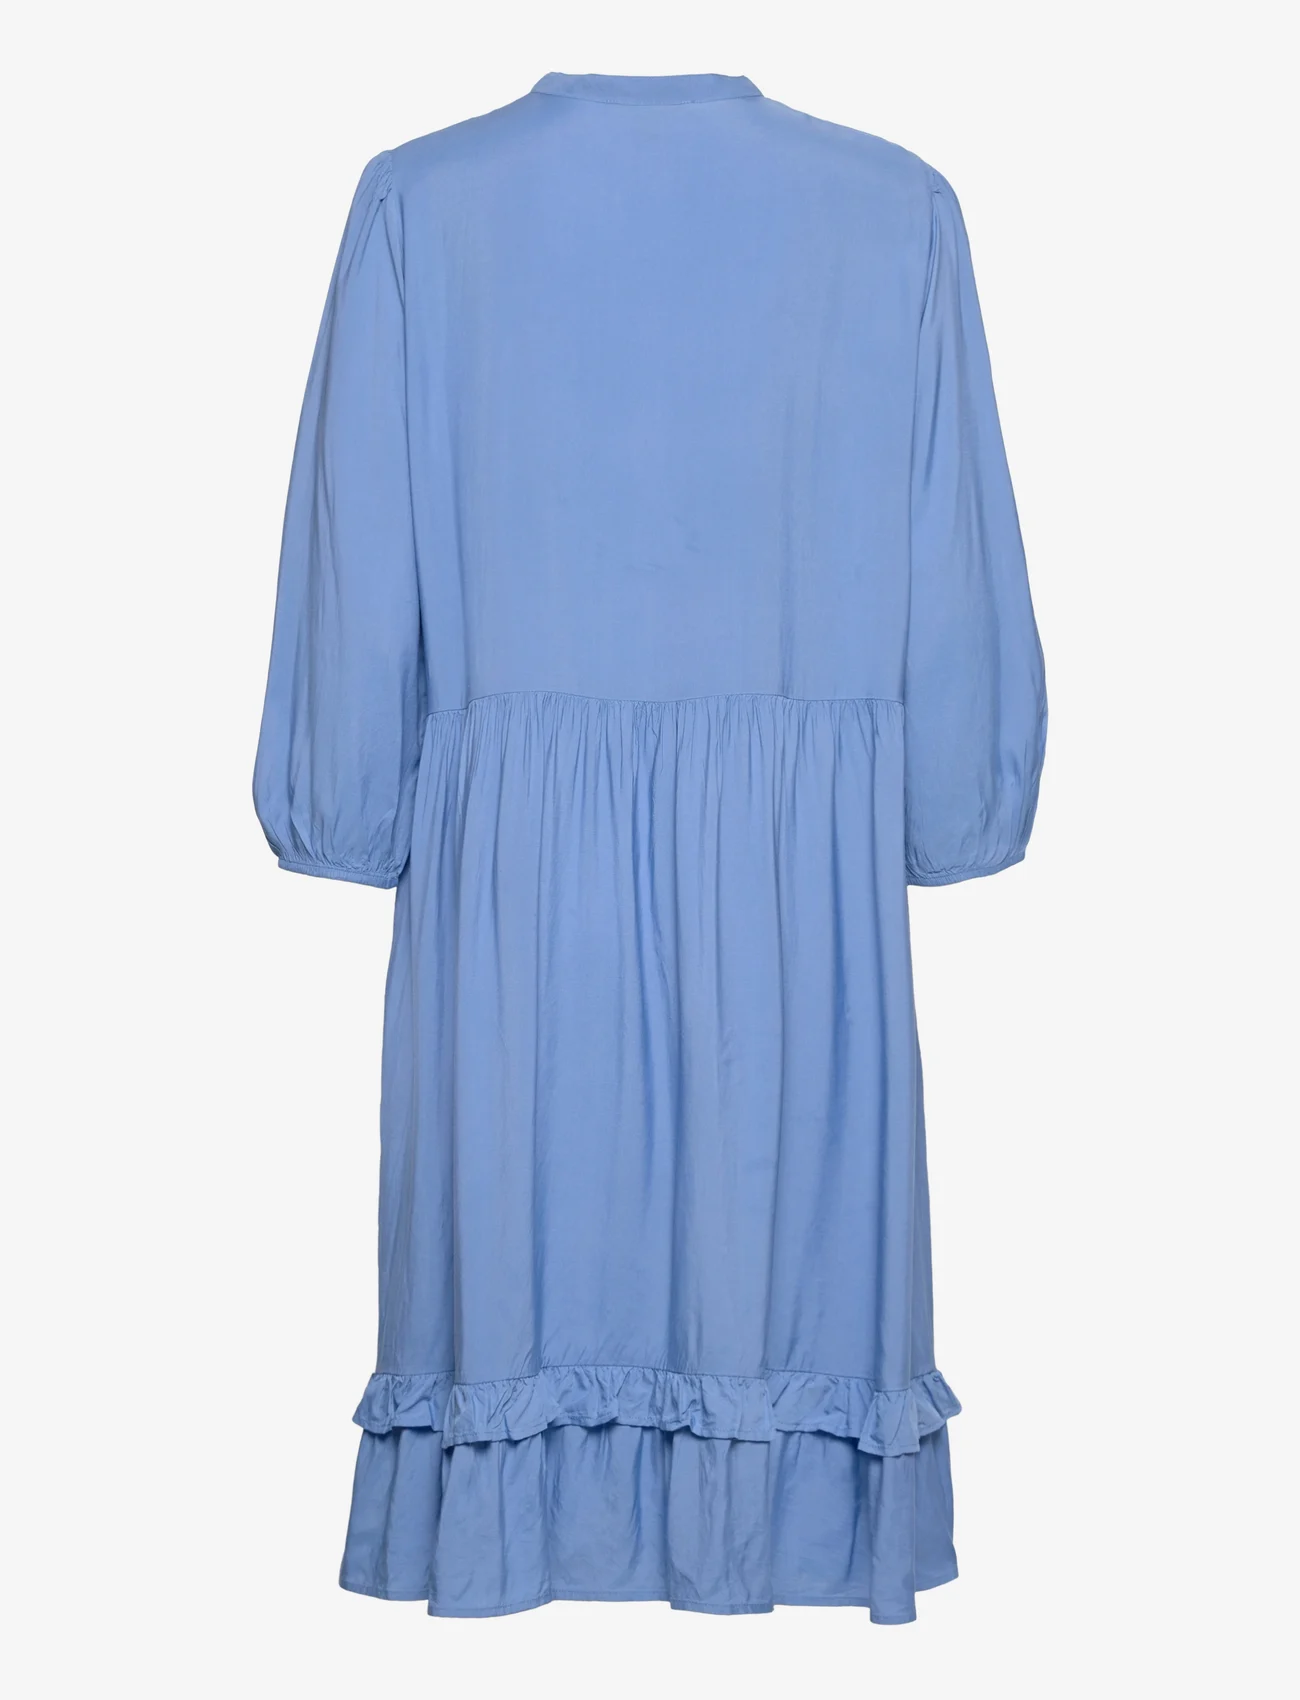 Esprit Casual - Women Dresses light woven midi - hemdkleider - light blue lavender 2 - 1